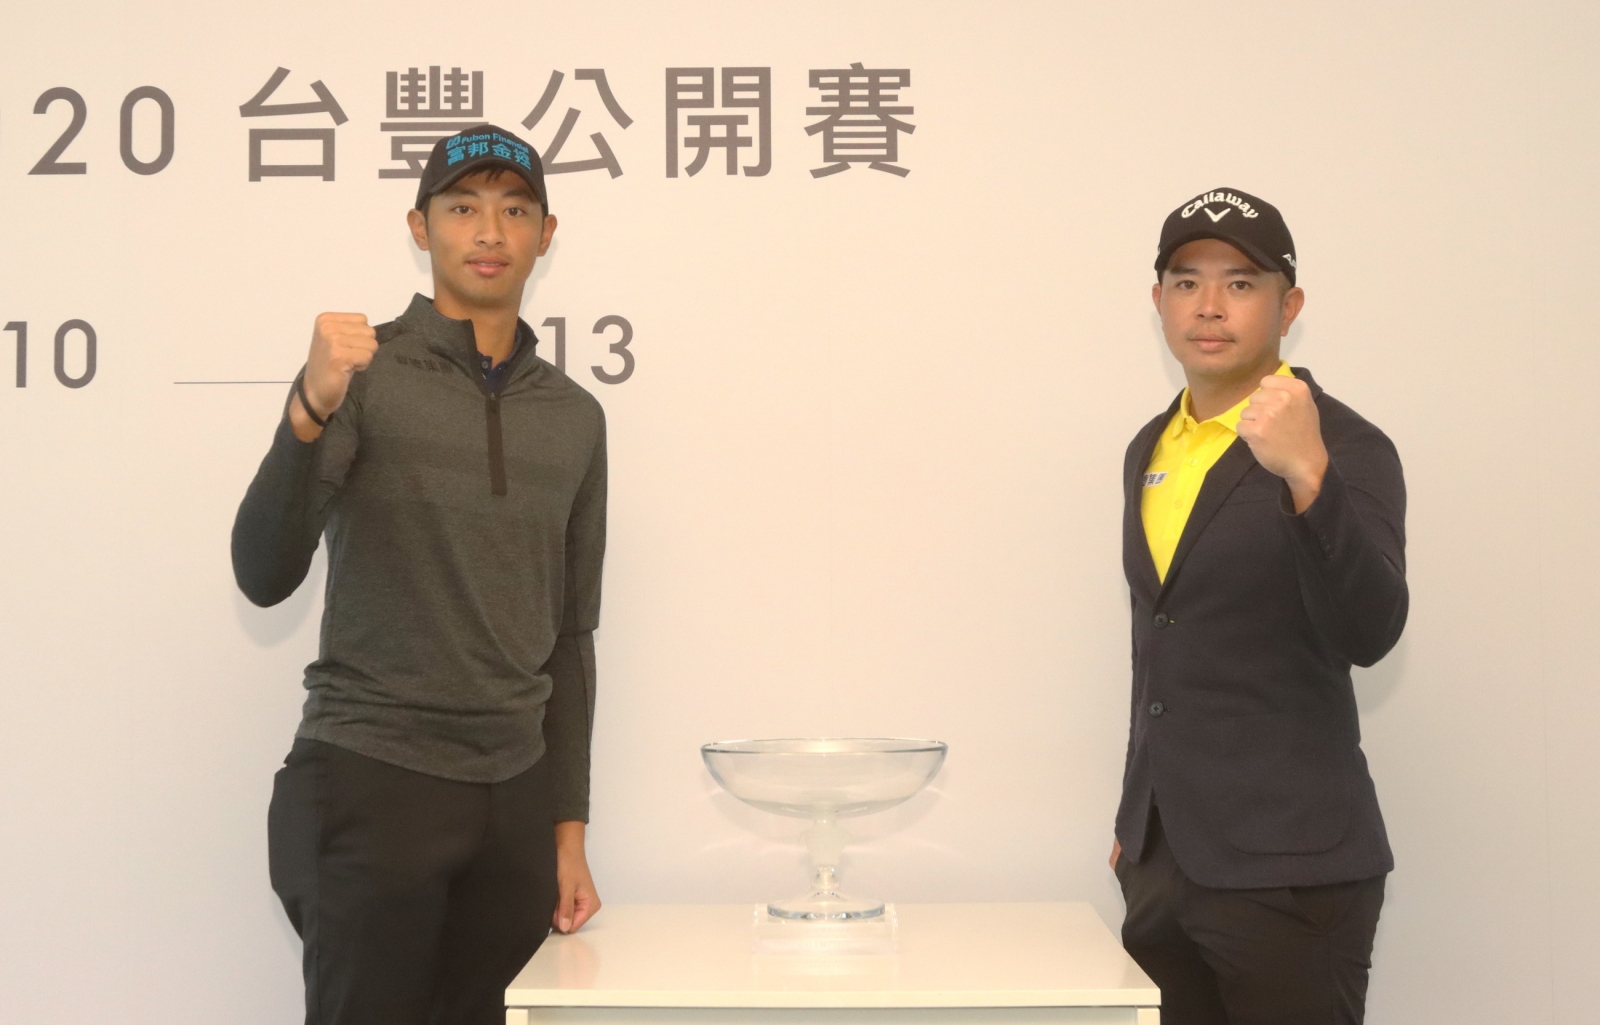 王偉軒（右）和詹世昌 (右) 將力爭冠軍盃。(鍾豐榮攝影)